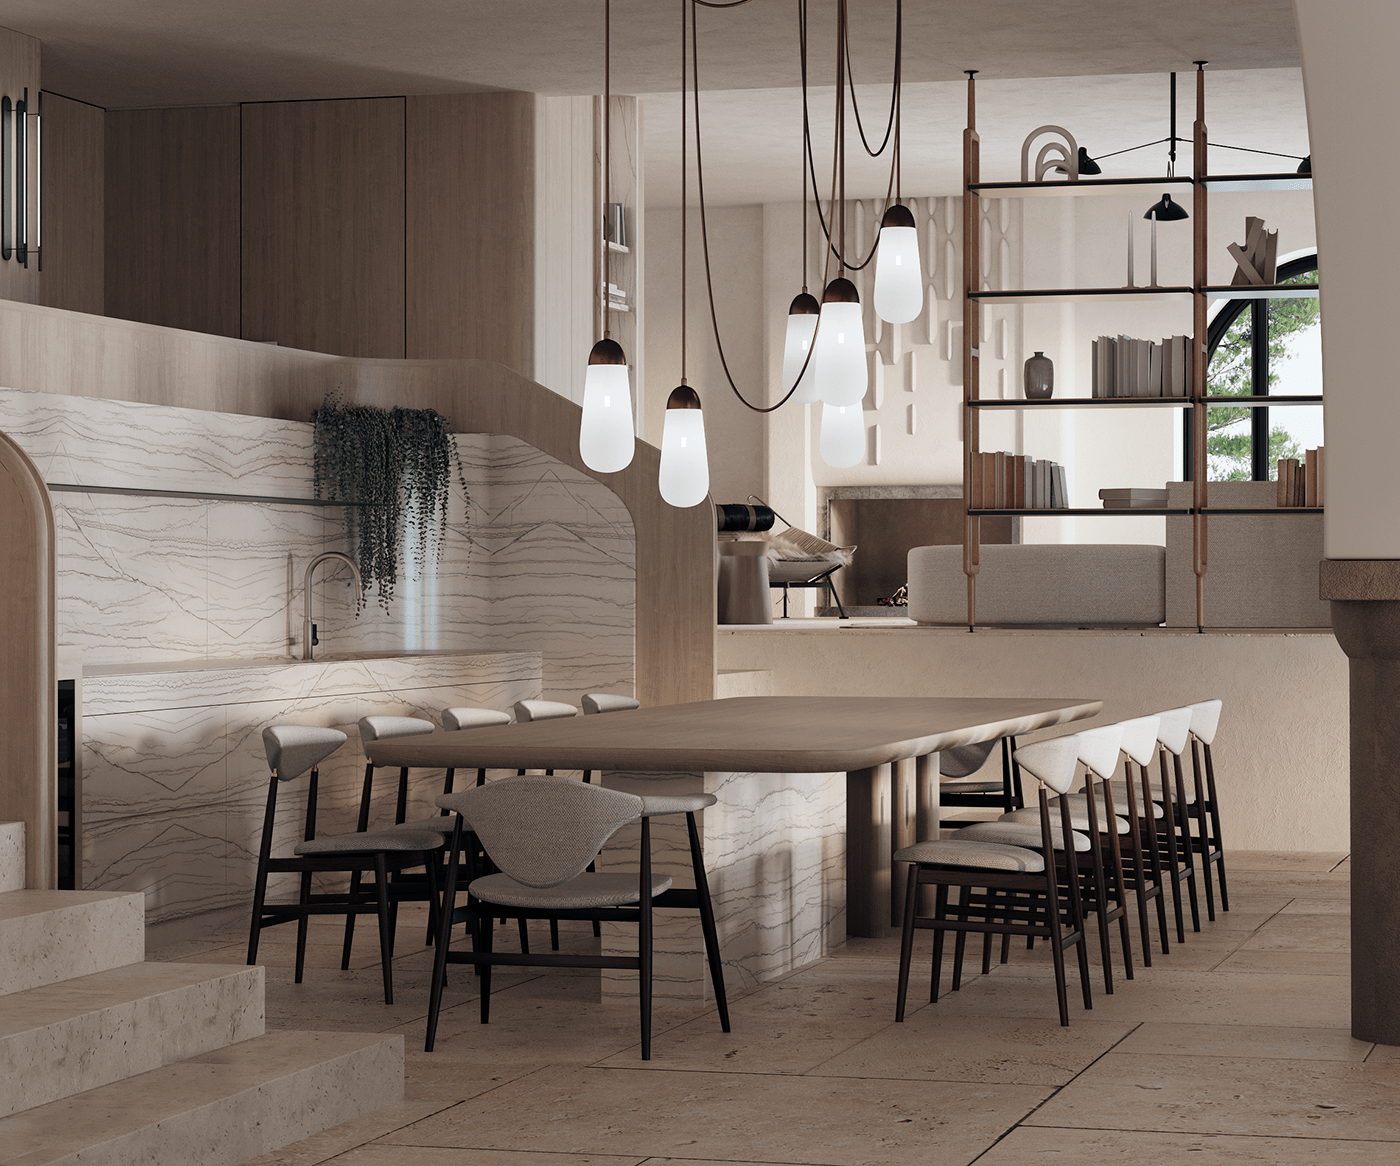 3dsmax CGI corona design Greece Interior Render Villa visual visualization